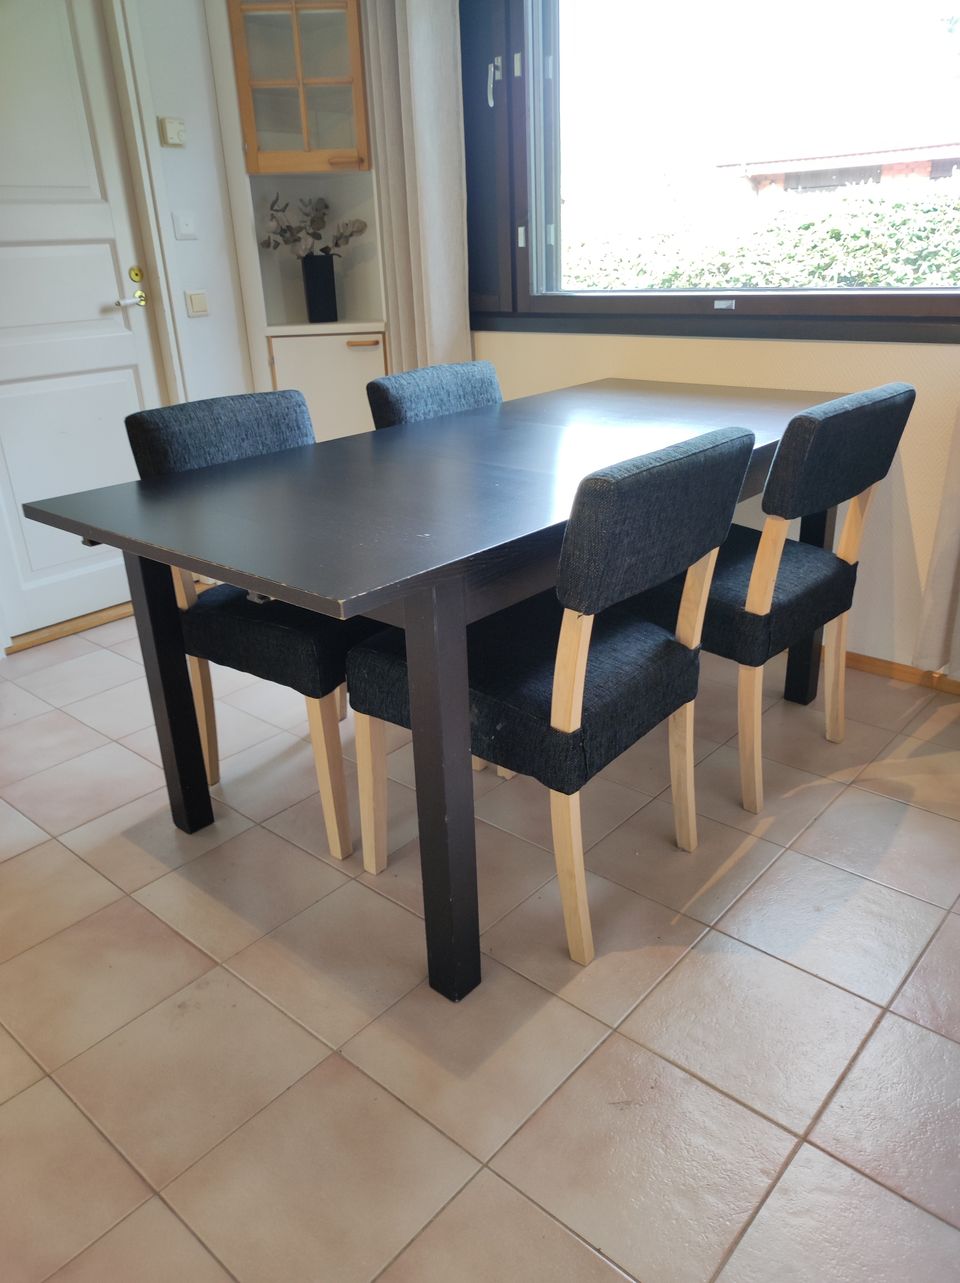 Ikea jatkettava ruokapöytä (ei tuoleja)